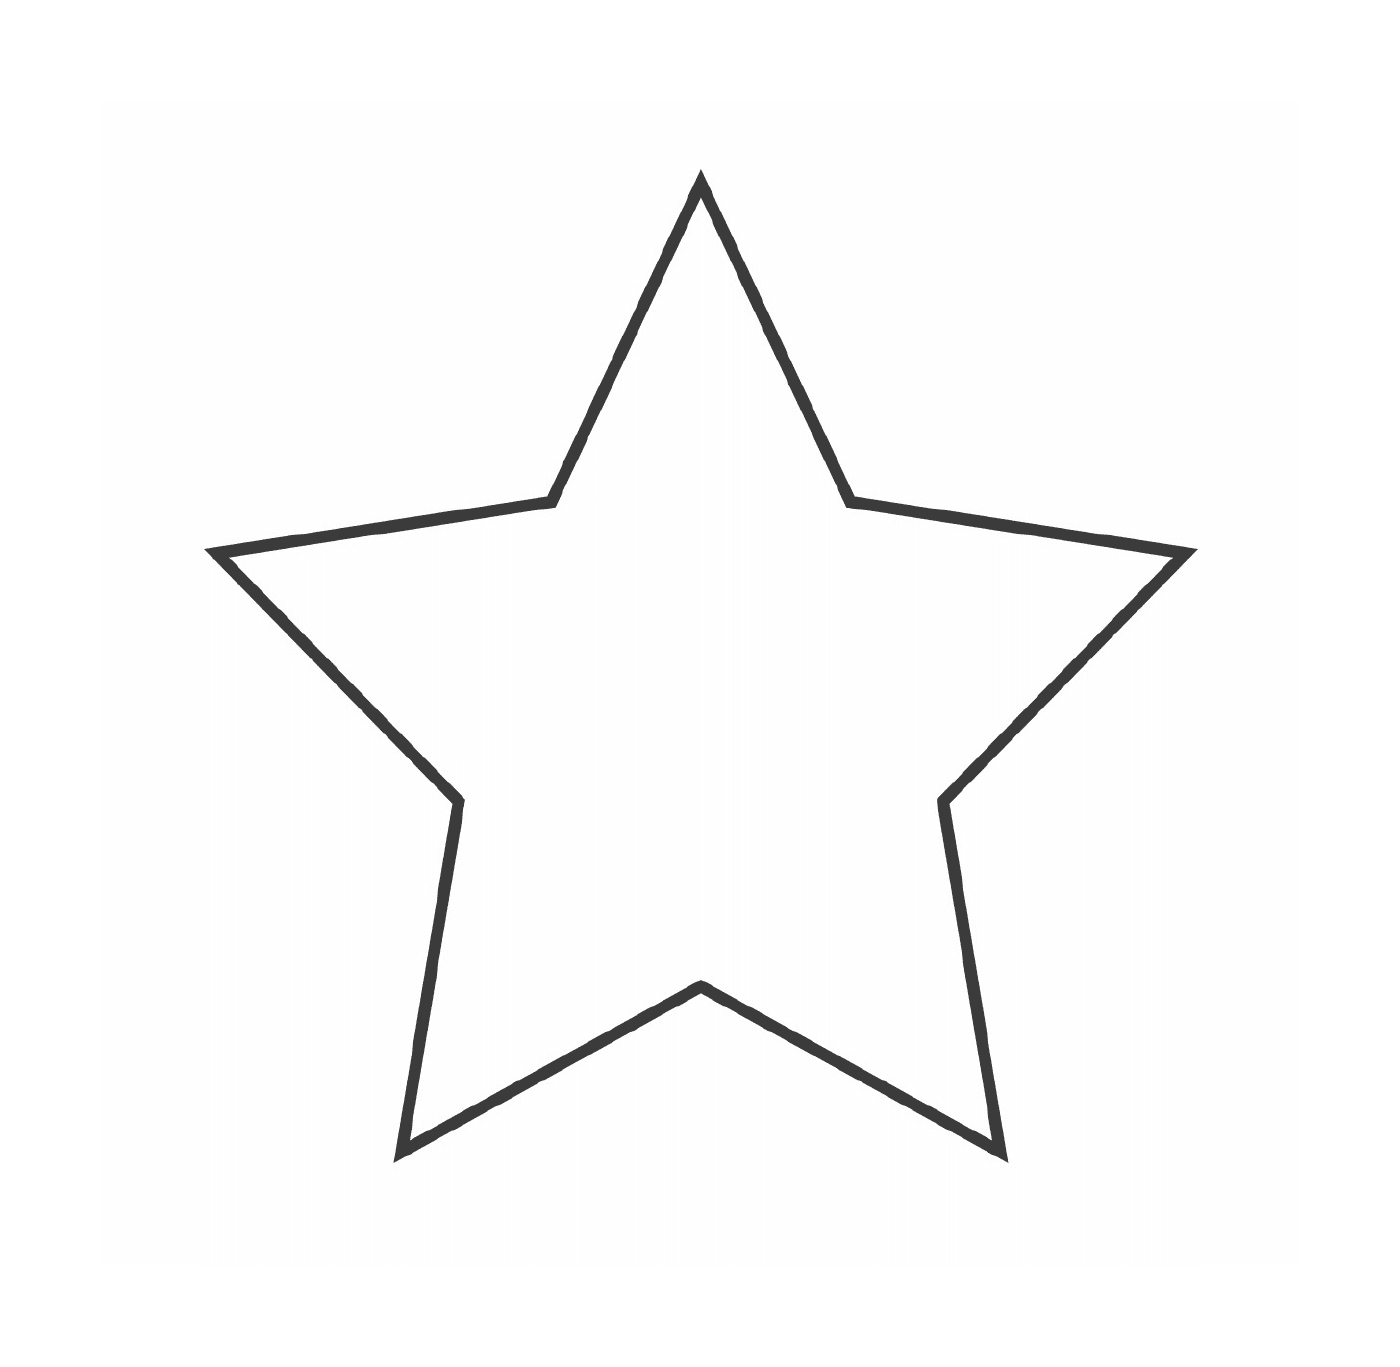  Ein Stern mit fünf Zweigen 